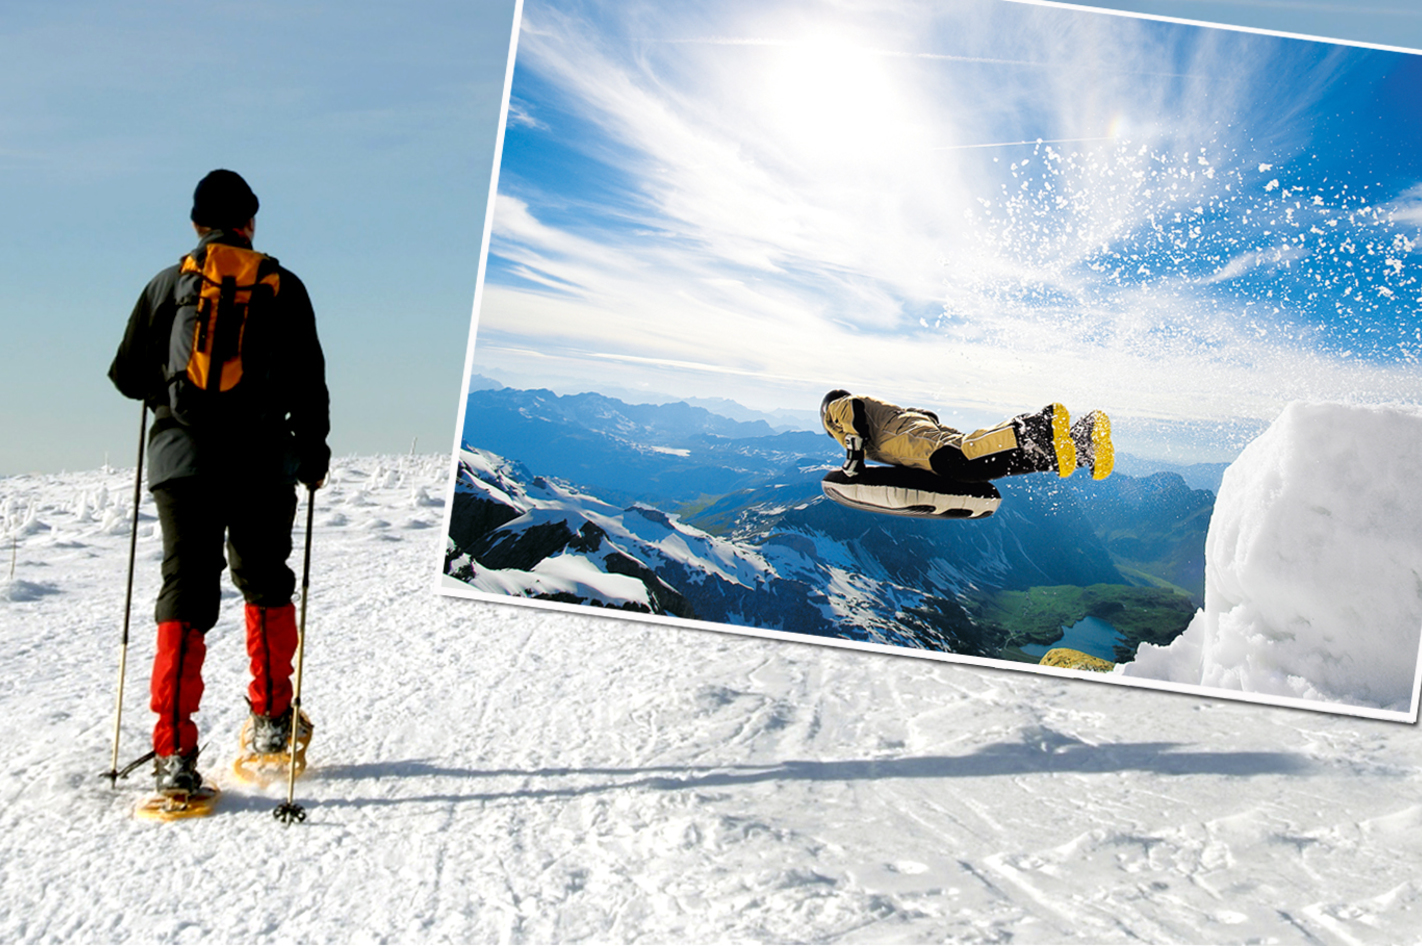 Schneeschuhtour und Freeride-Airboarding in Schliersee